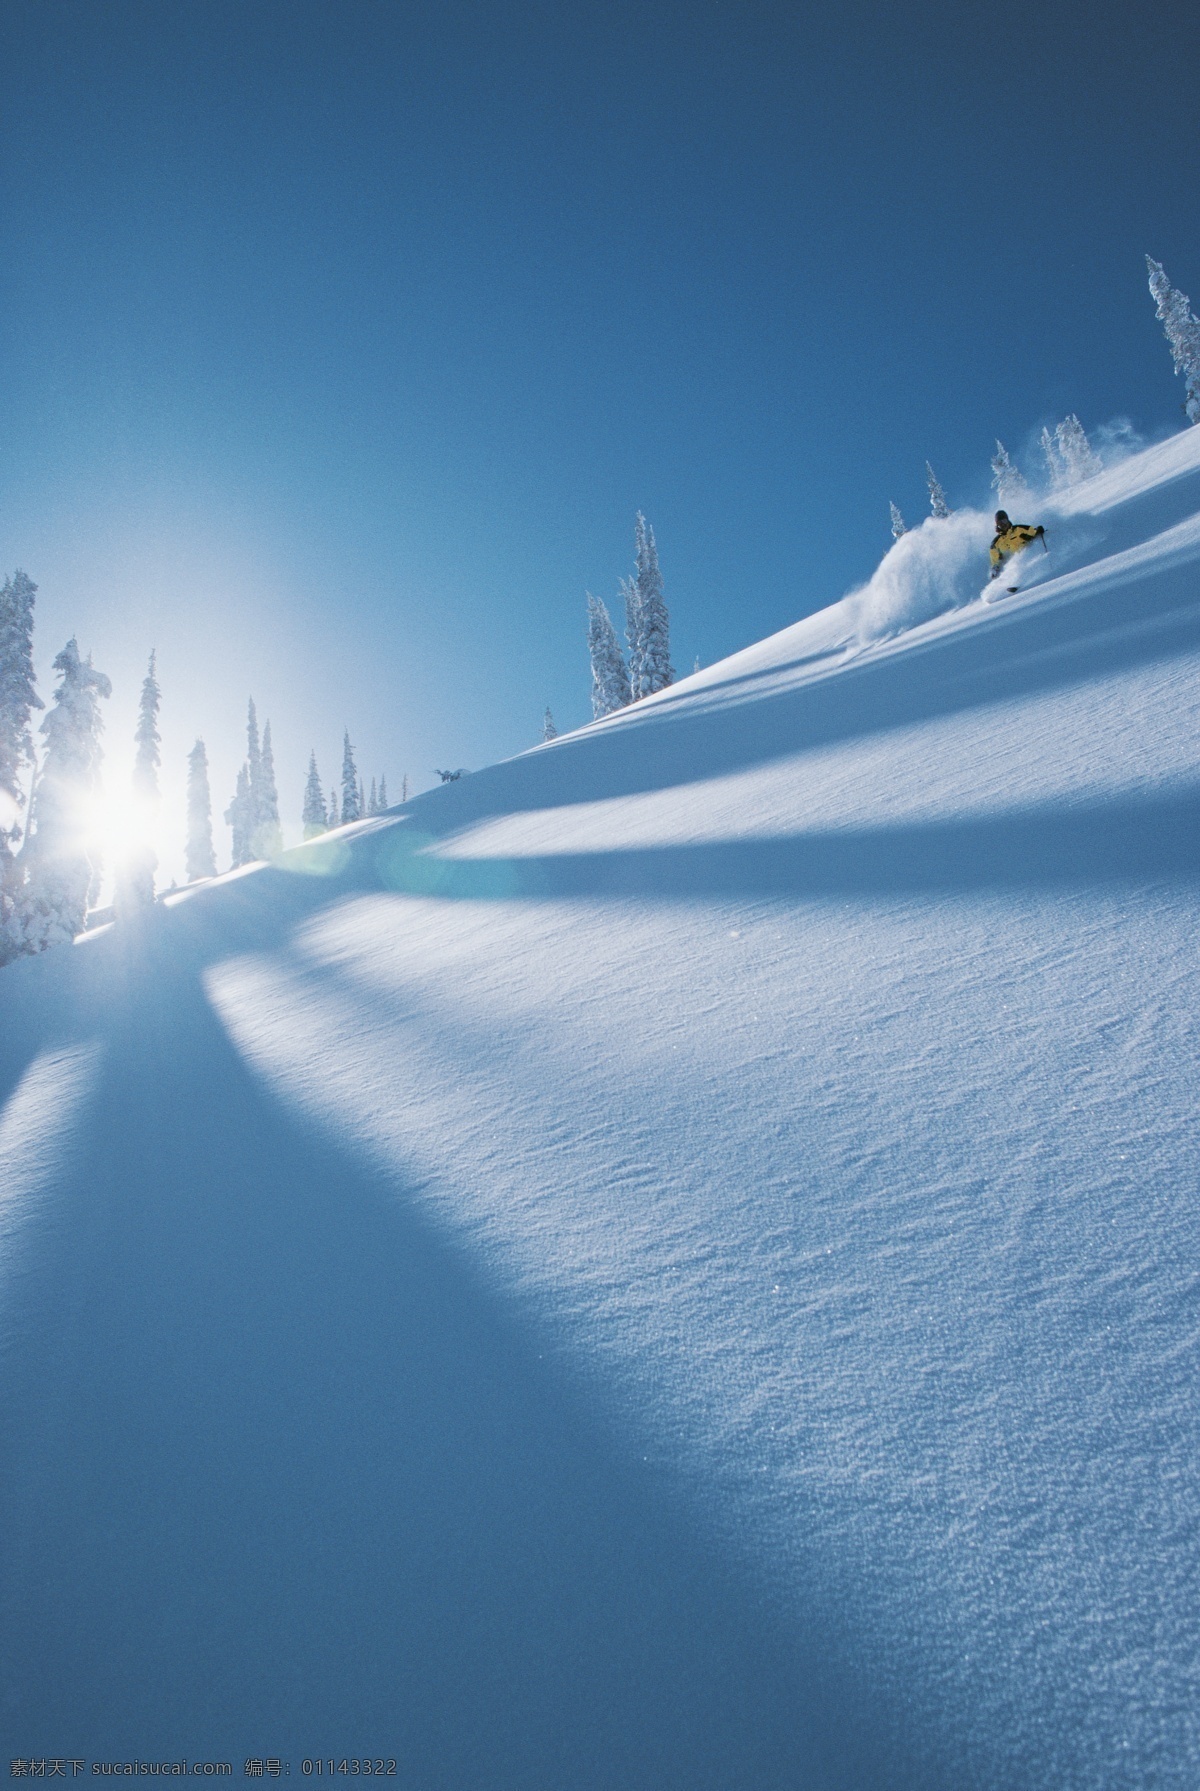 美丽 雪景 滑雪 运动员 高清 冬天 雪地运动 划雪运动 极限运动 体育项目 下滑 速度 运动图片 生活百科 雪山 风景 摄影图片 高清图片 体育运动 蓝色